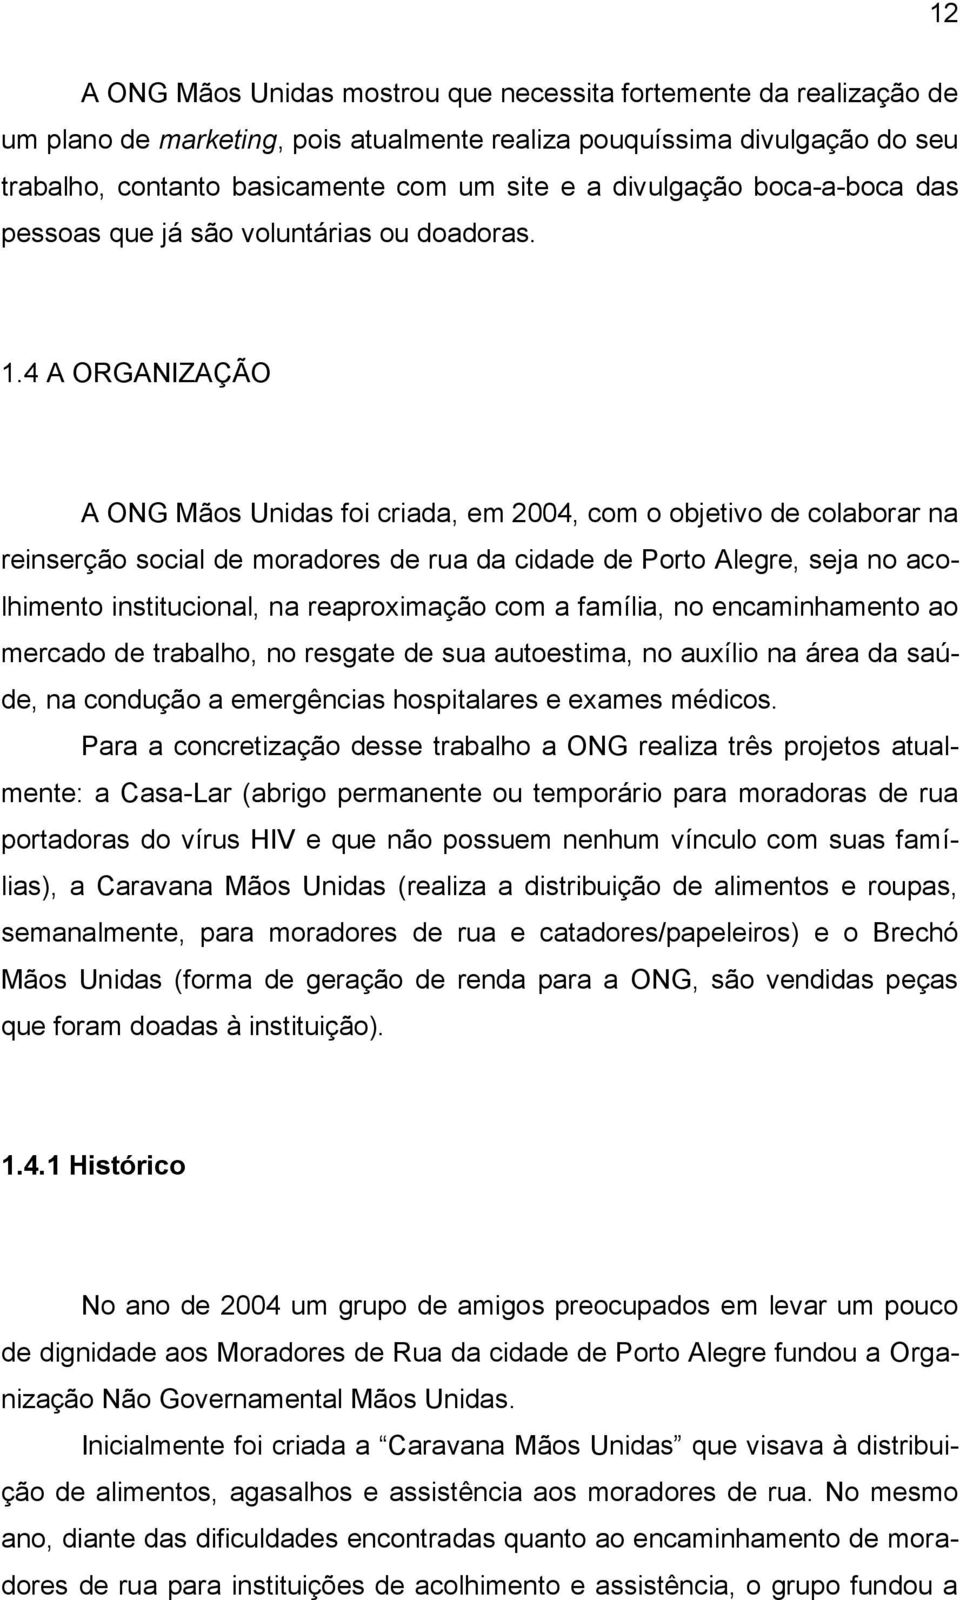 4 A ORGANIZAÇÃO A ONG Mãos Unidas foi criada, em 2004, com o objetivo de colaborar na reinserção social de moradores de rua da cidade de Porto Alegre, seja no acolhimento institucional, na